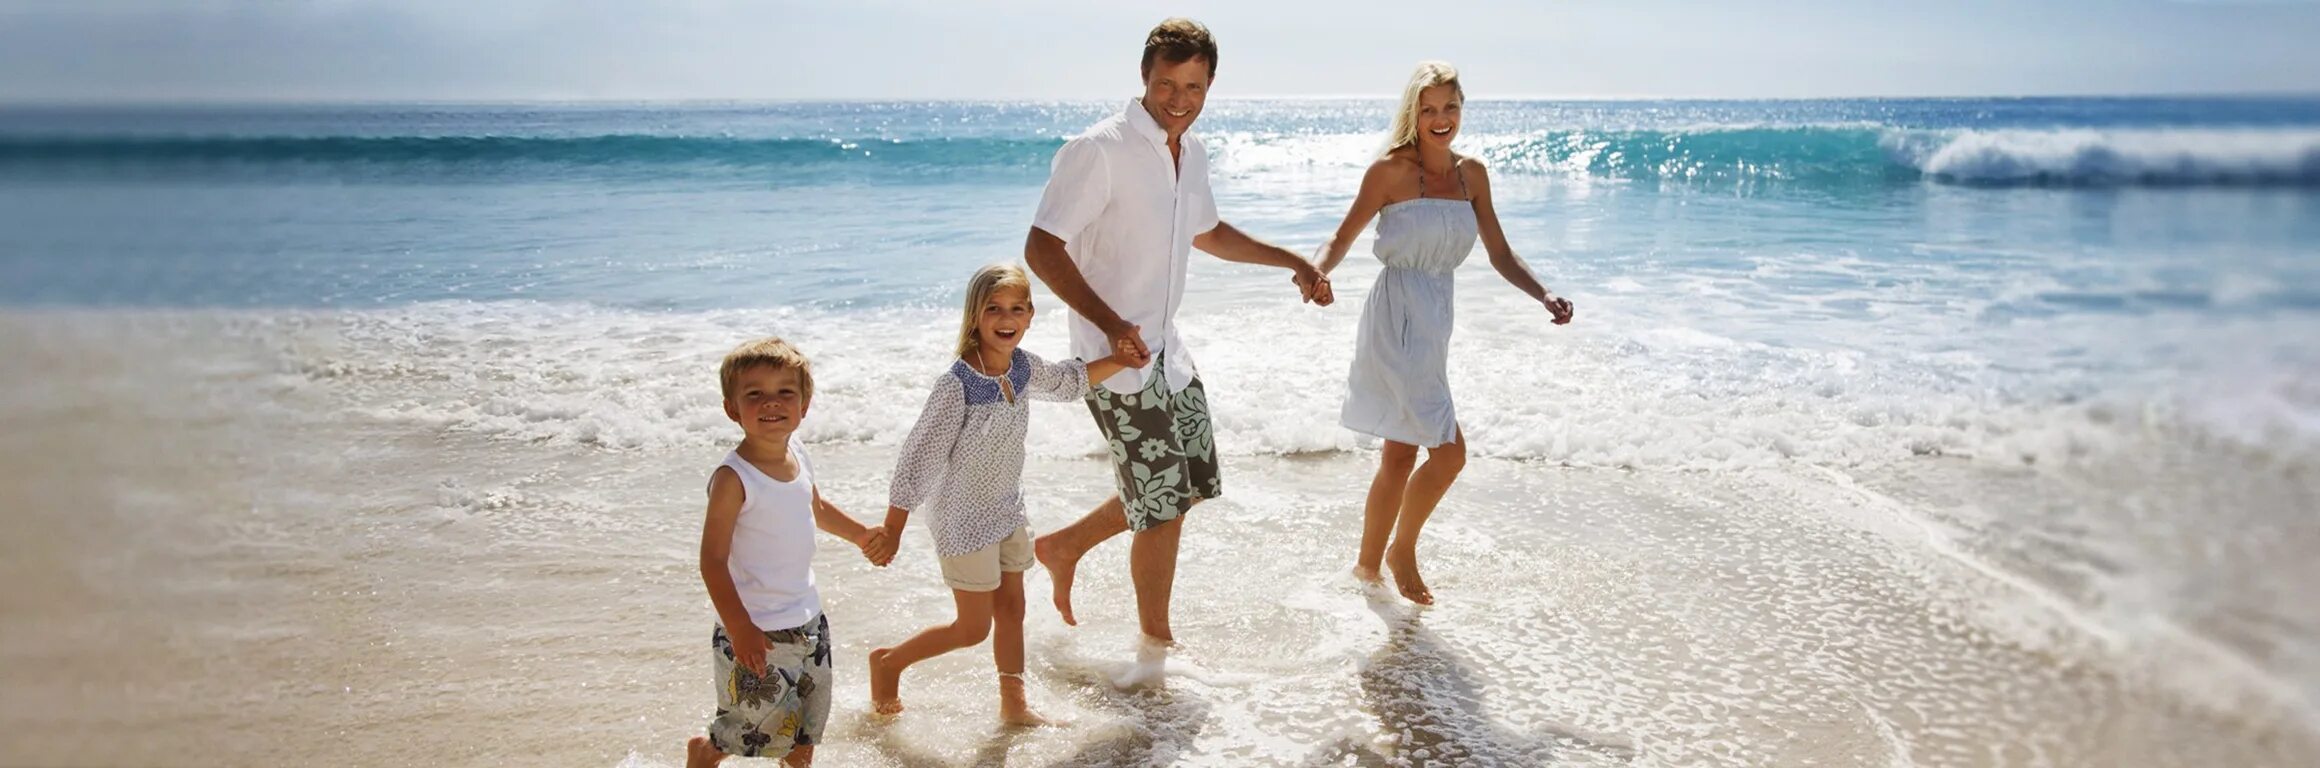 Здоровая семья на пляже. Family Beach молодой. Чудесные прогулки на море. Travel Beach Family. Где отдыхать в марте с детьми